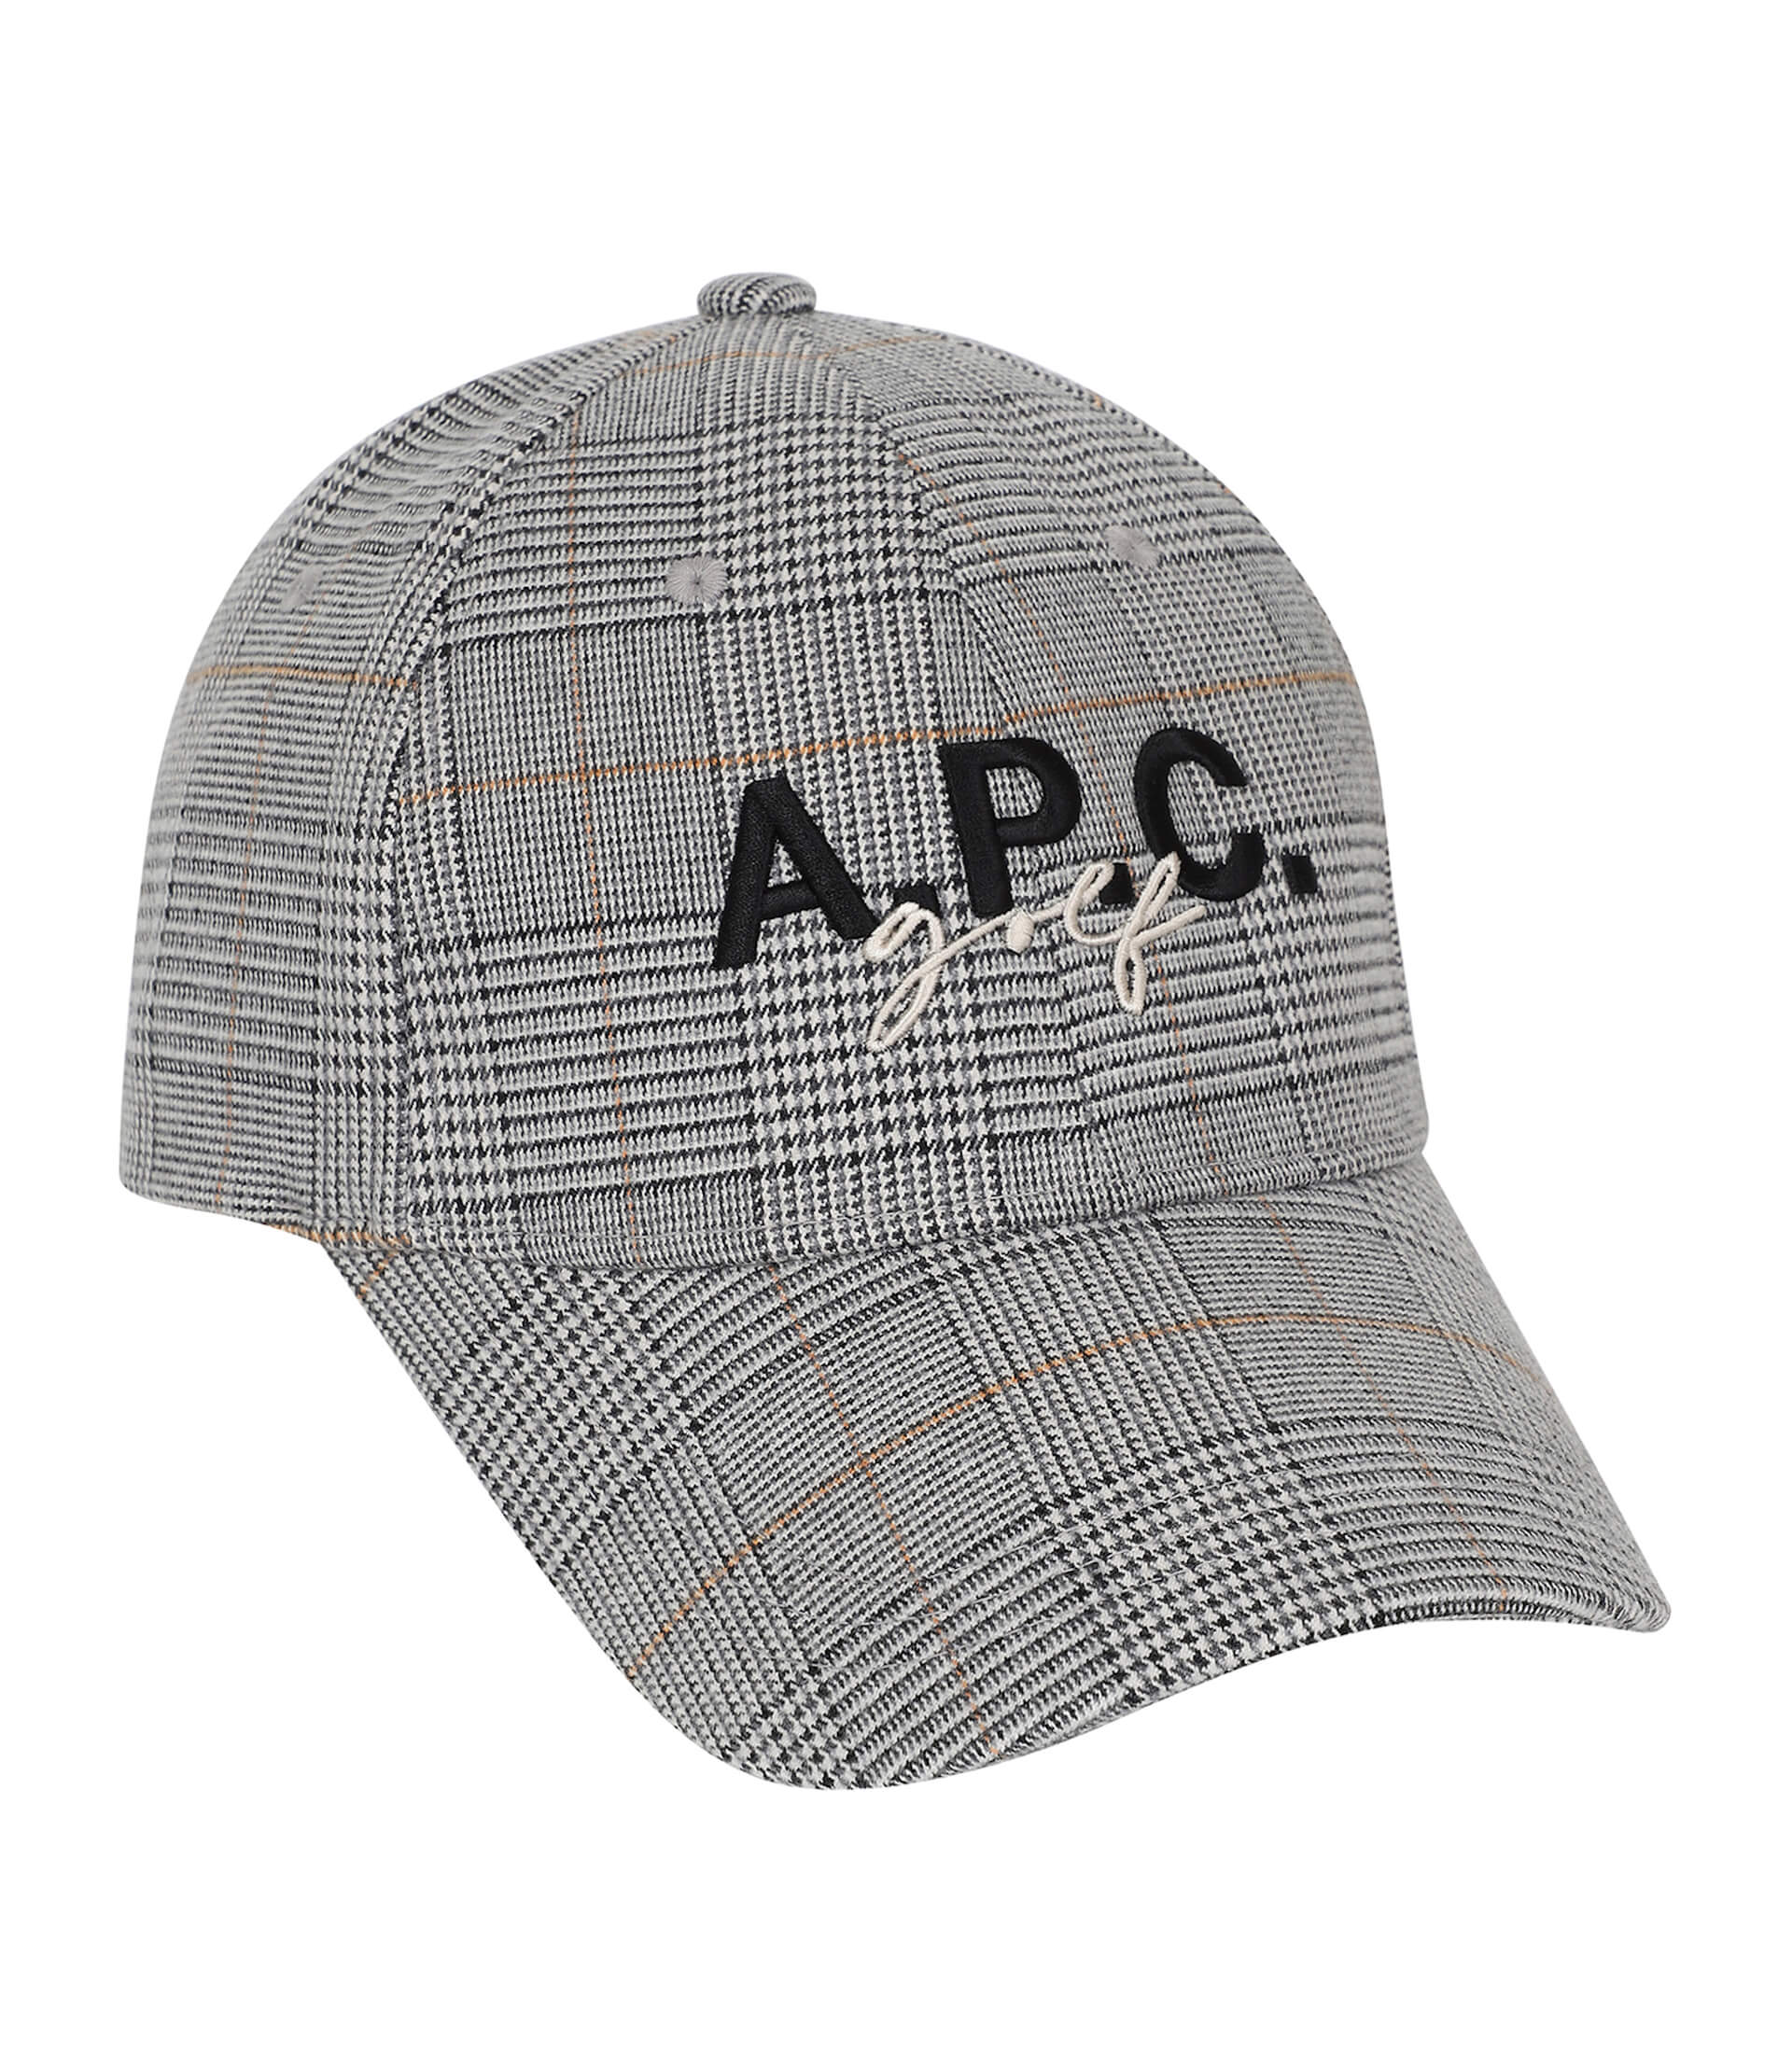 【A.P.C. GOLF】フィールドライフと日常も楽しめるダウンジャケットやベスト、アクセサリーが登場 fashion221202-apcjp-015